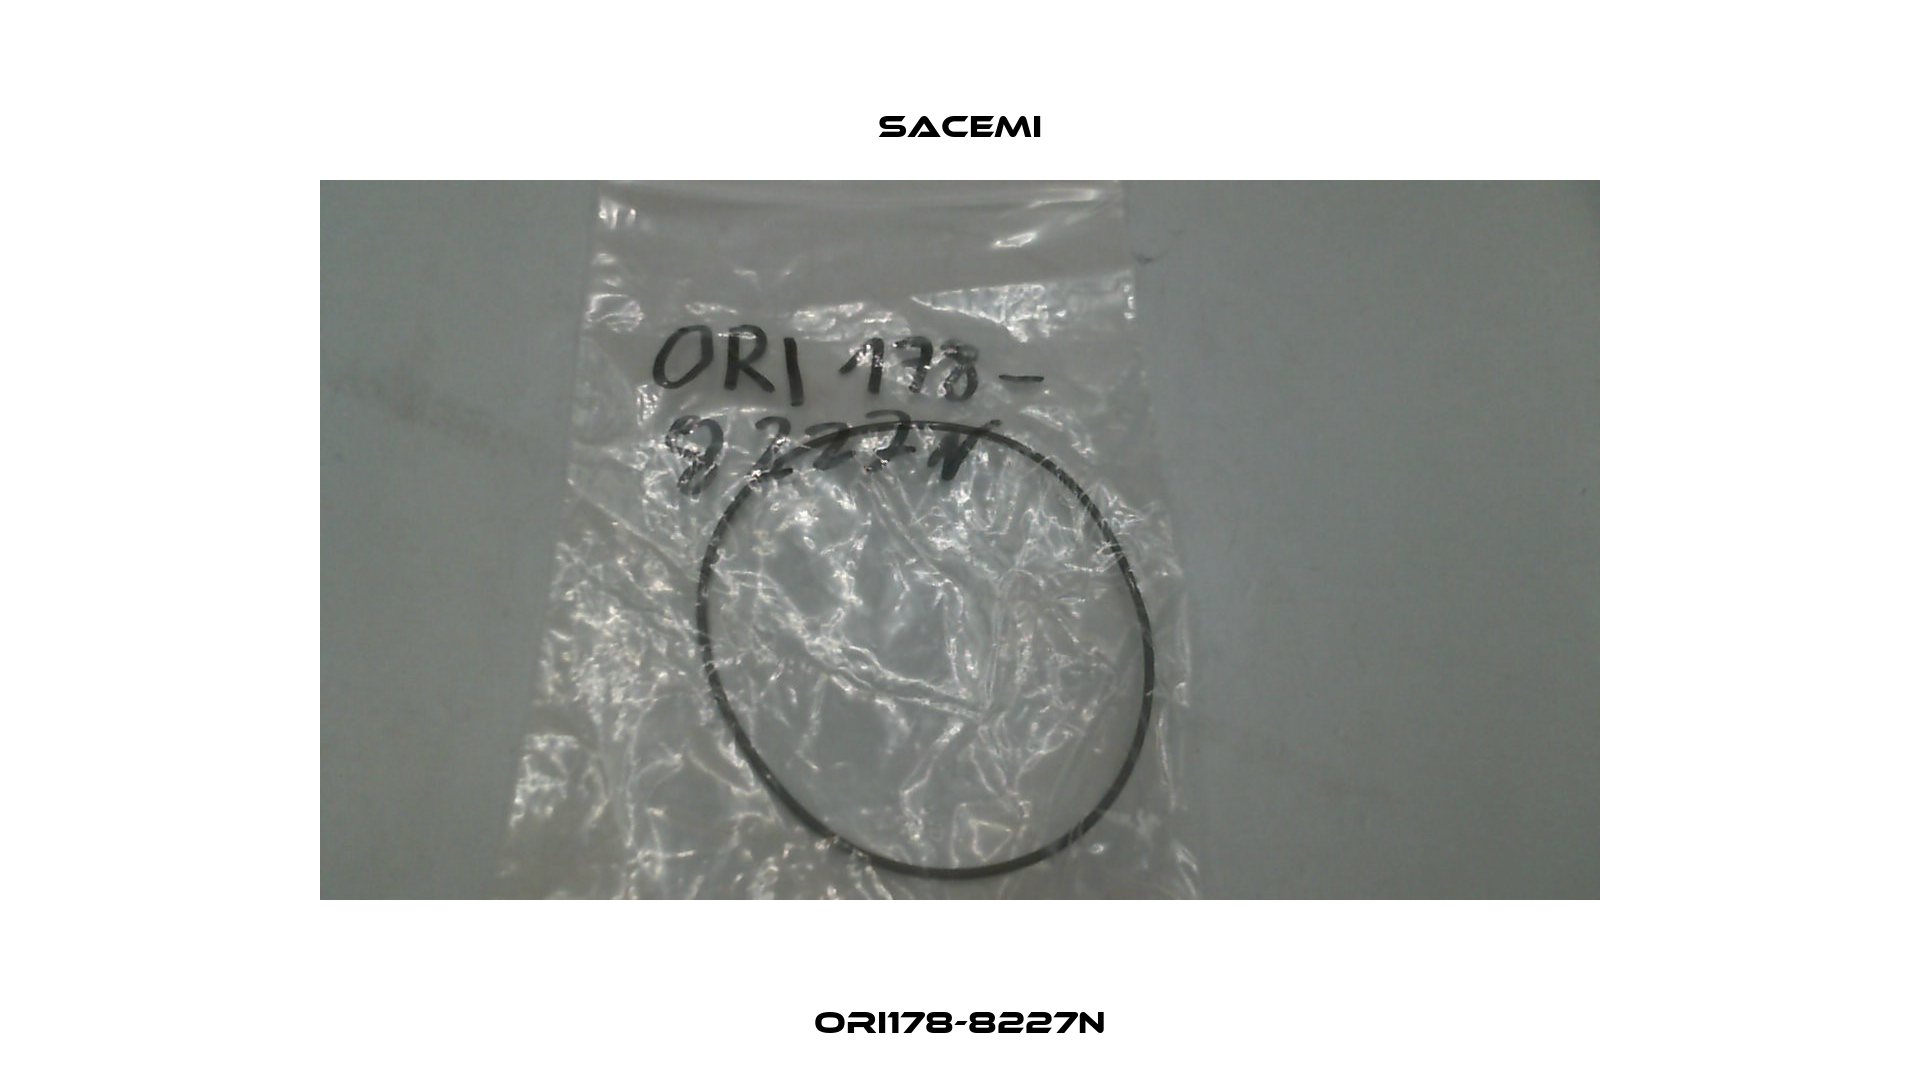 ORI178-8227N Sacemi